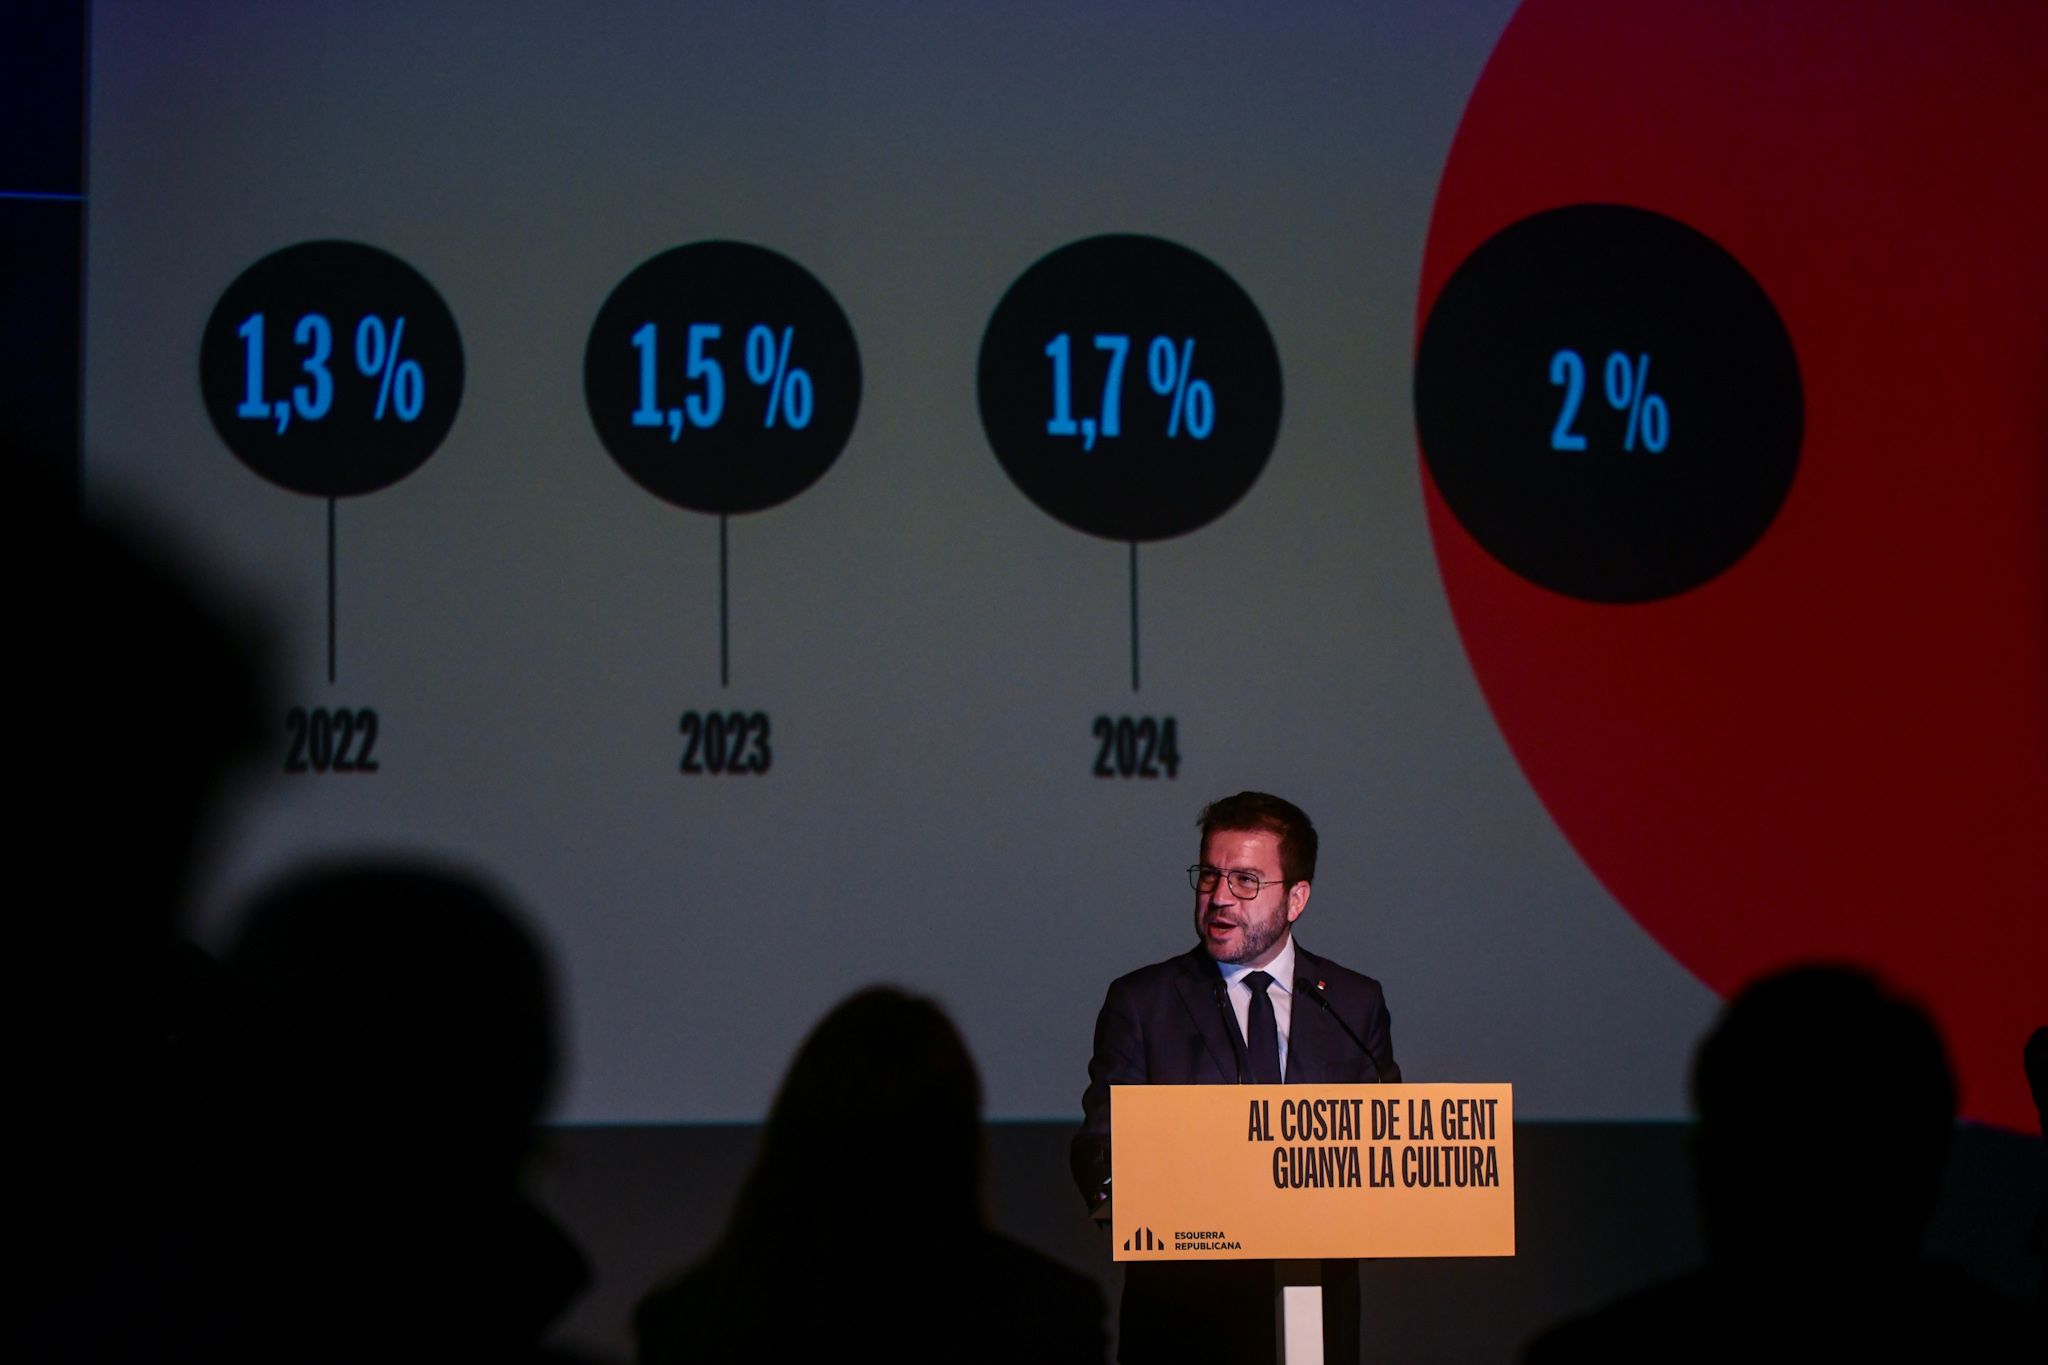 El president de la Generalitat i candidat d'ERC el 12-M, Pere Aragonès, aquest dijous a Ideal Barcelona.